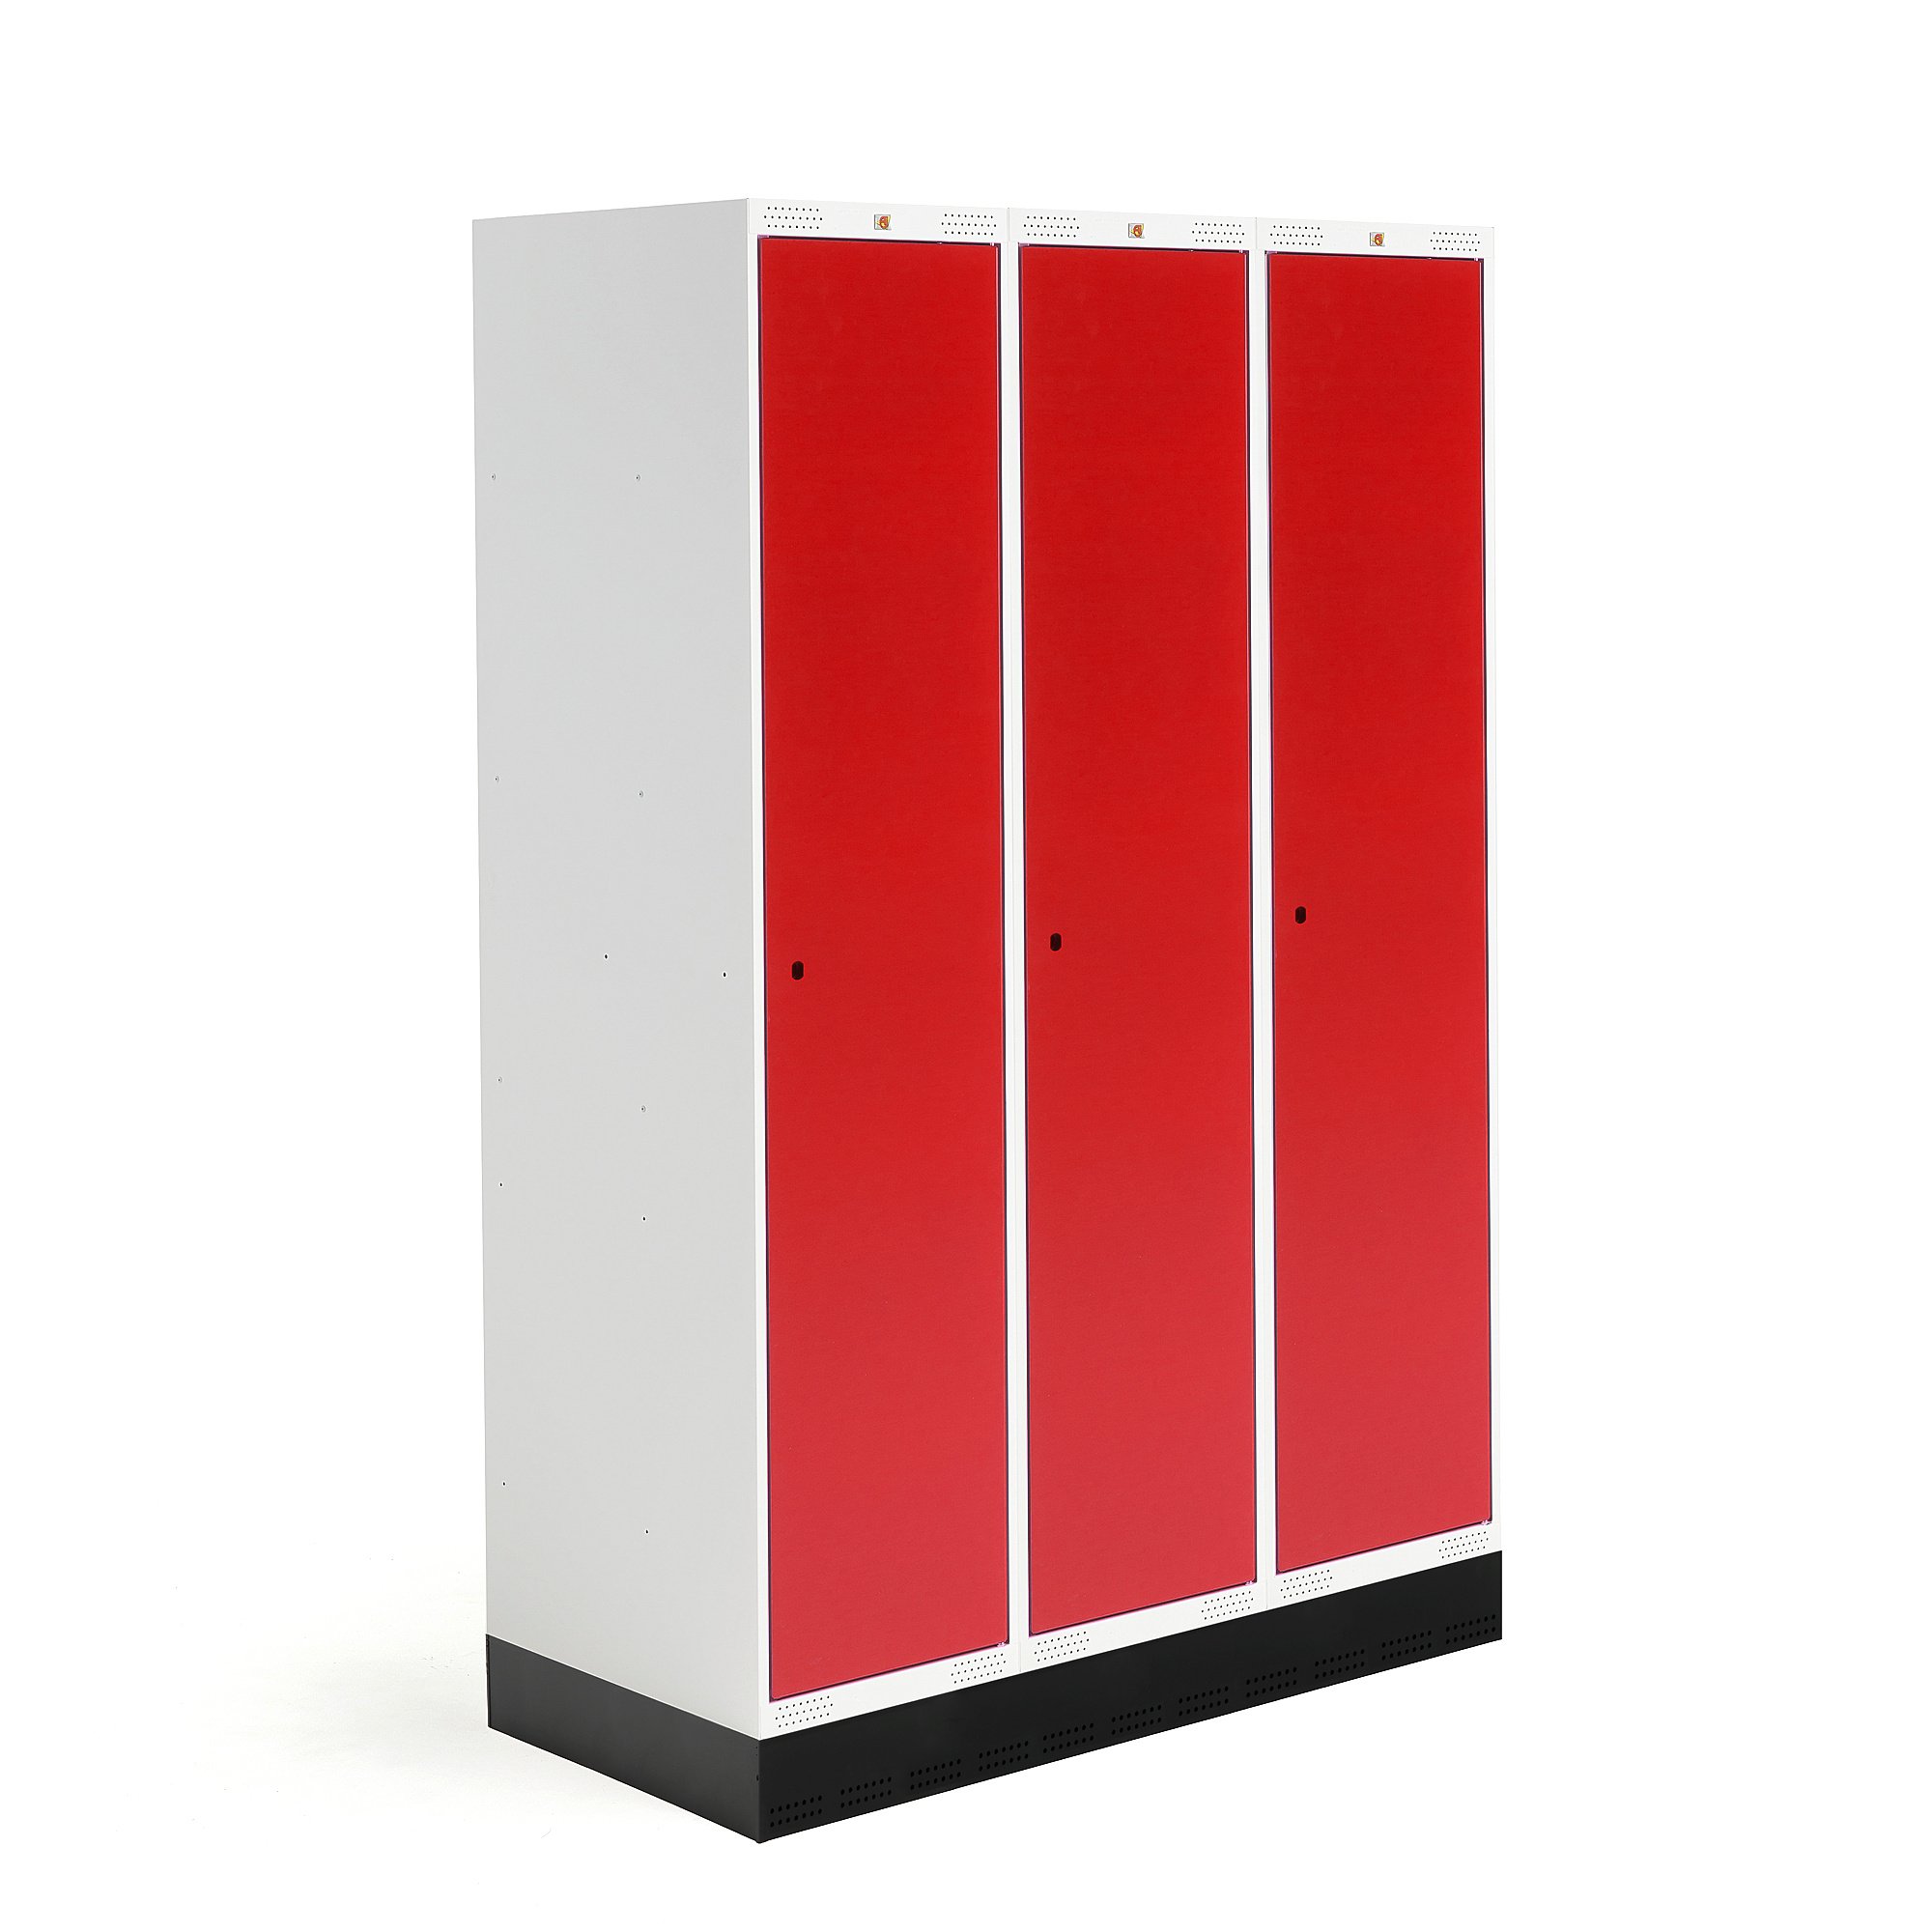 Šatní skříňka ROZ, 3 sekce, se soklem, 1890x1200x550 mm, červená